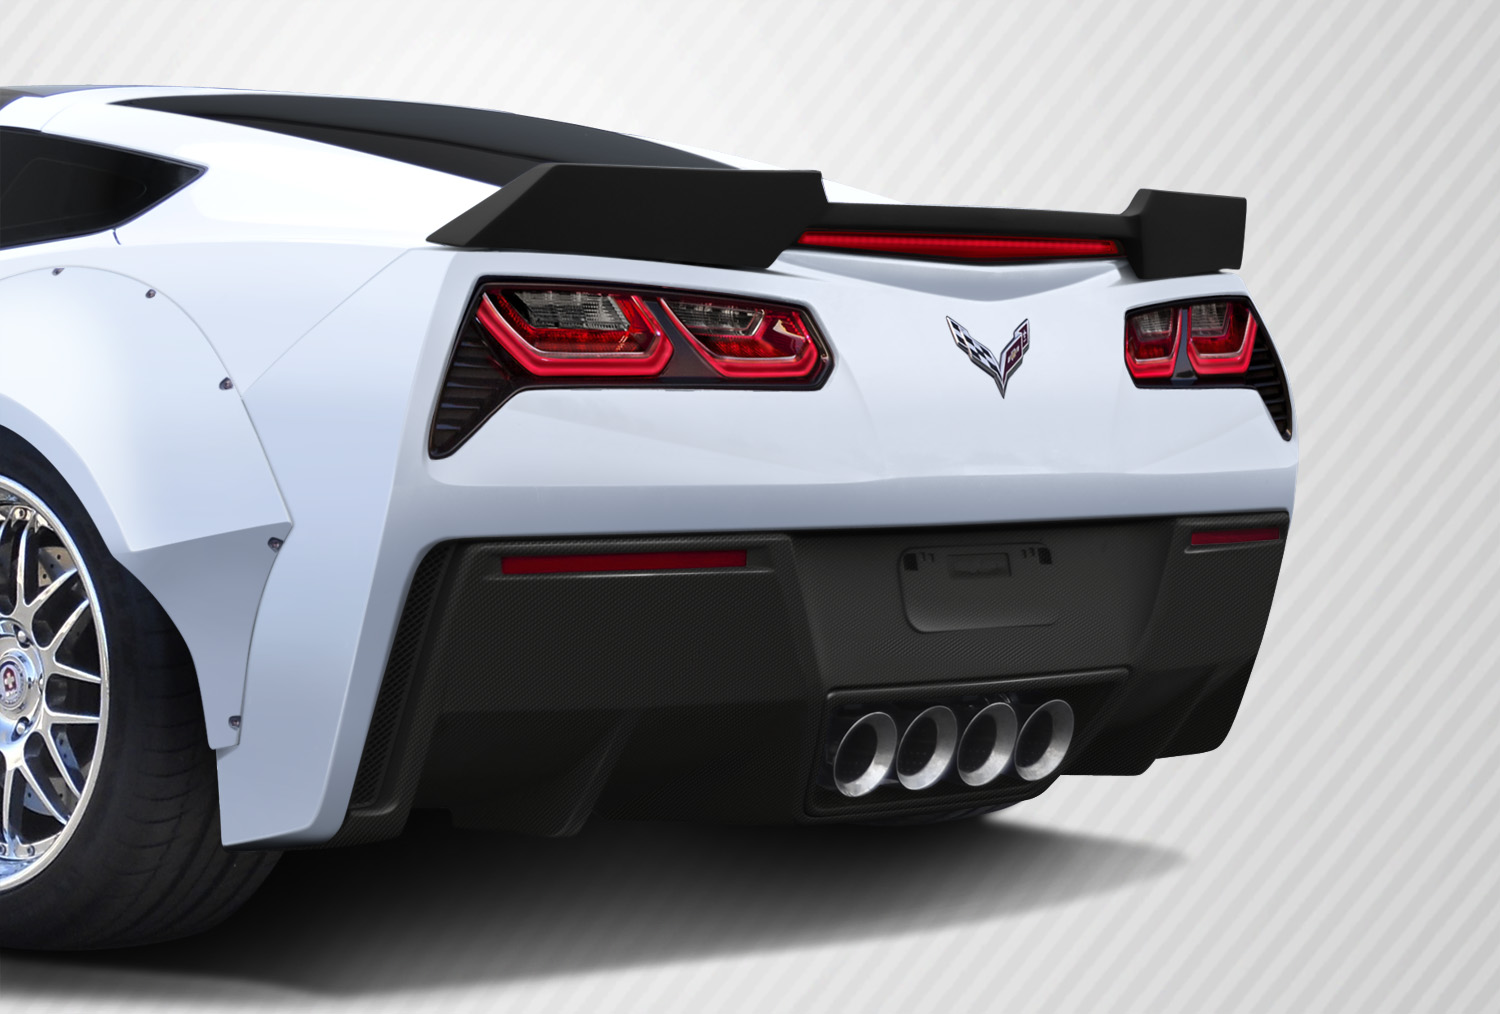 2014 Chevrolet Corvette ALL - Carbon Fiber Fibre Body Kit Bodykit - Chevrolet Corvette C7 Carbon Creations Apex Body Kit - 7 Piece - Includes Carbon C